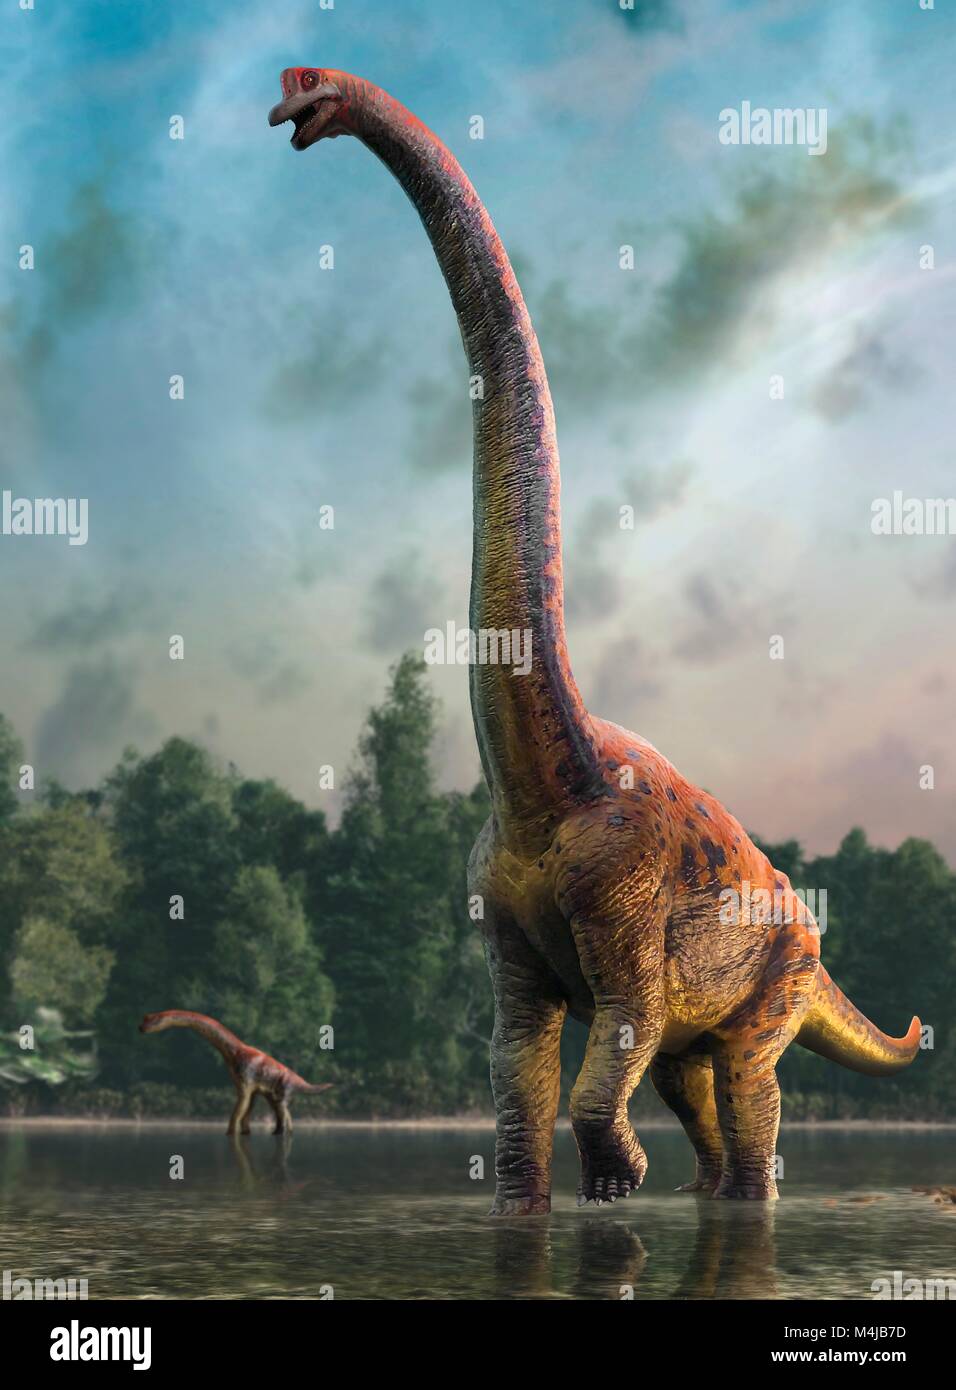 Illustrazione di un dinosauro giraffatitan madre e neonato. Giraffatitan è stato precedentemente pensato per essere una specie di brachiosaurus (B. brancai) ma è ora il pensiero di appartenere a un genere separato. Questi animali sono stati sauropods, quattro gambe, pianta-eating dinosauri del Giurassico. Essi hanno raggiunto una lunghezza massima di circa 26 metri e pesa fino a 40 t. Gli scheletri di Brachiosaurus e Giraffatitan, anche se provenienti da diversi continenti (in America e in Africa, rispettivamente) guardare quasi identico a un occhio inesperto, così questa immagine potrebbe rappresentare o animale. Foto Stock